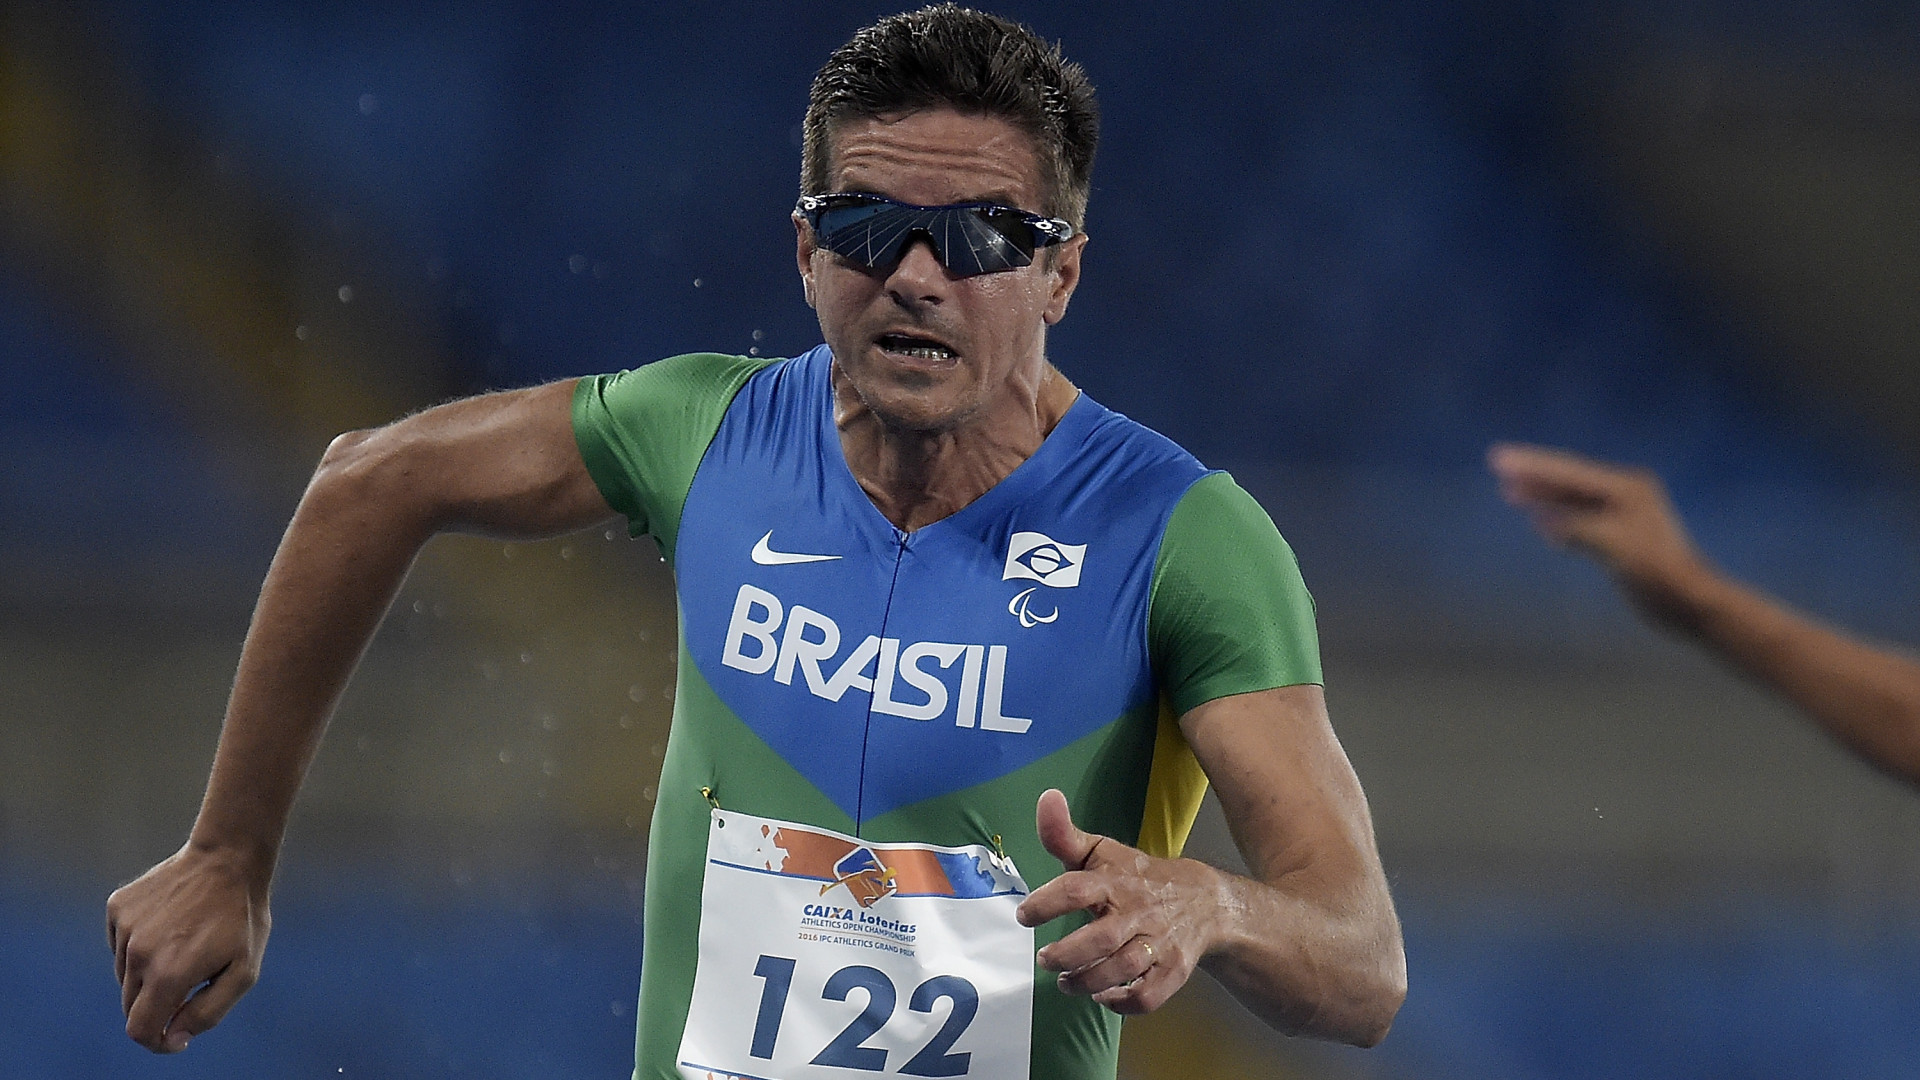 Aos 37 anos, Edson Pinheiro fatura 
bronze nos 100 metros T38